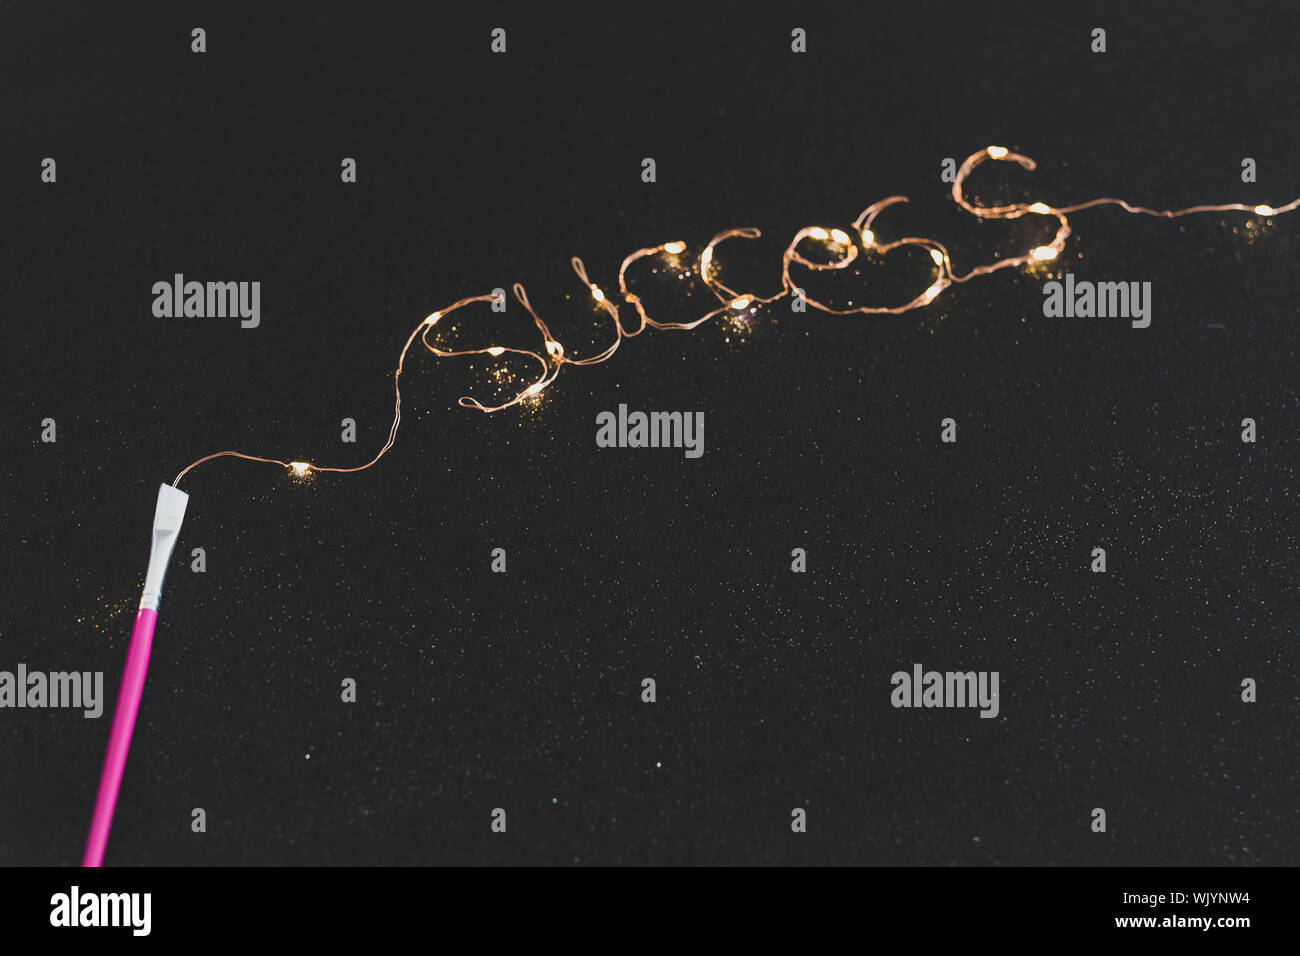 Pinsel malen Erfolgsmeldung aus Lichterketten auf dunklen glitzerndem  Hintergrund, konzeptionelle Still Life Stockfotografie - Alamy